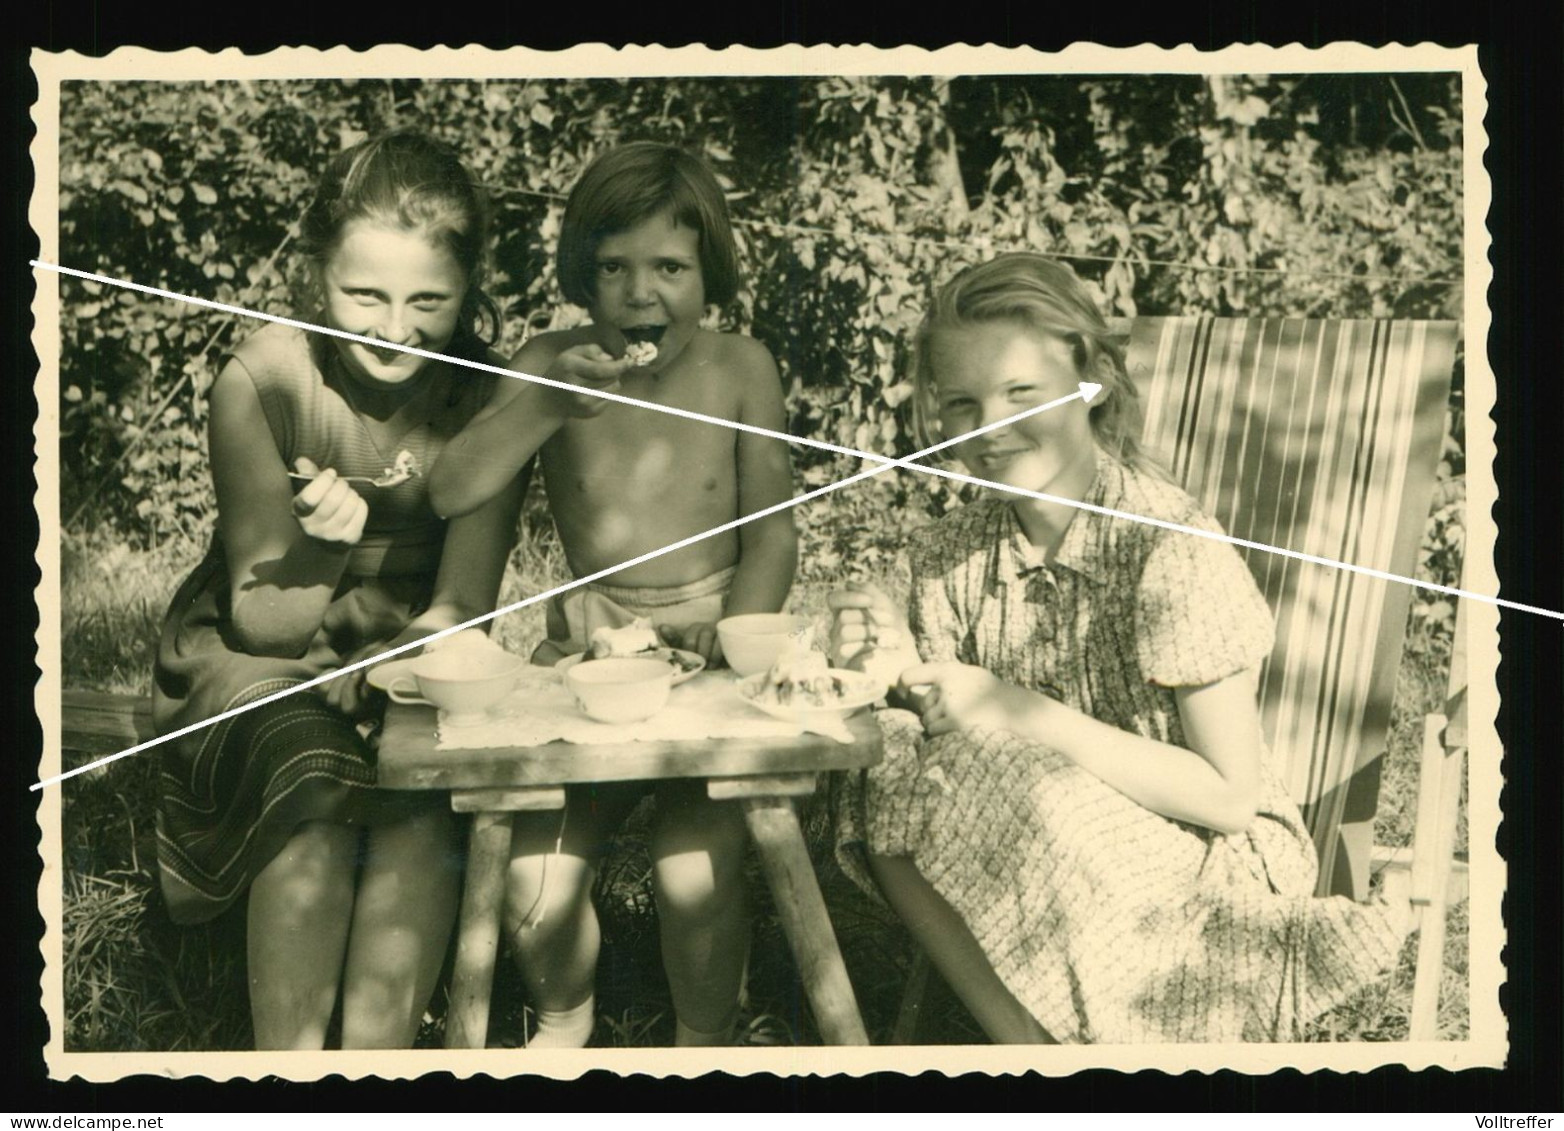 Orig. Foto 30er Jahre Hübsche Mädchen Zusammen, Picknick, Sweet Young Girls Schoolgirls Beach Fashion Garden Eating - Personas Anónimos